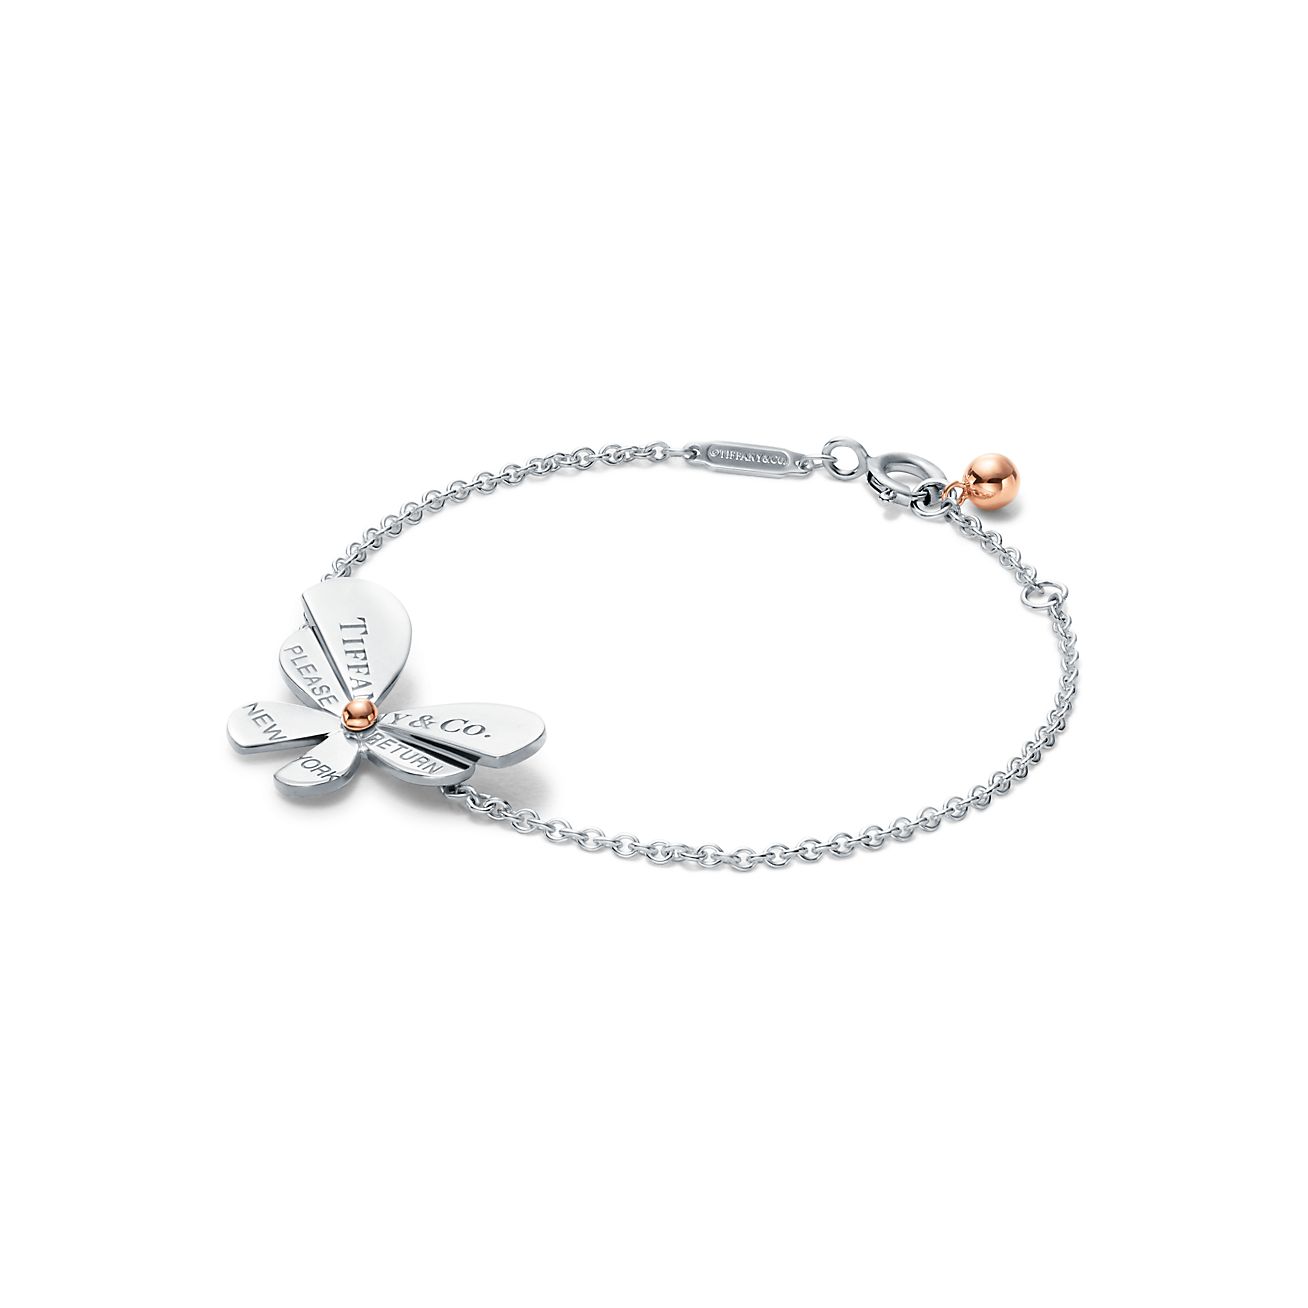 Love Bugs butterfly chain bracelet in 